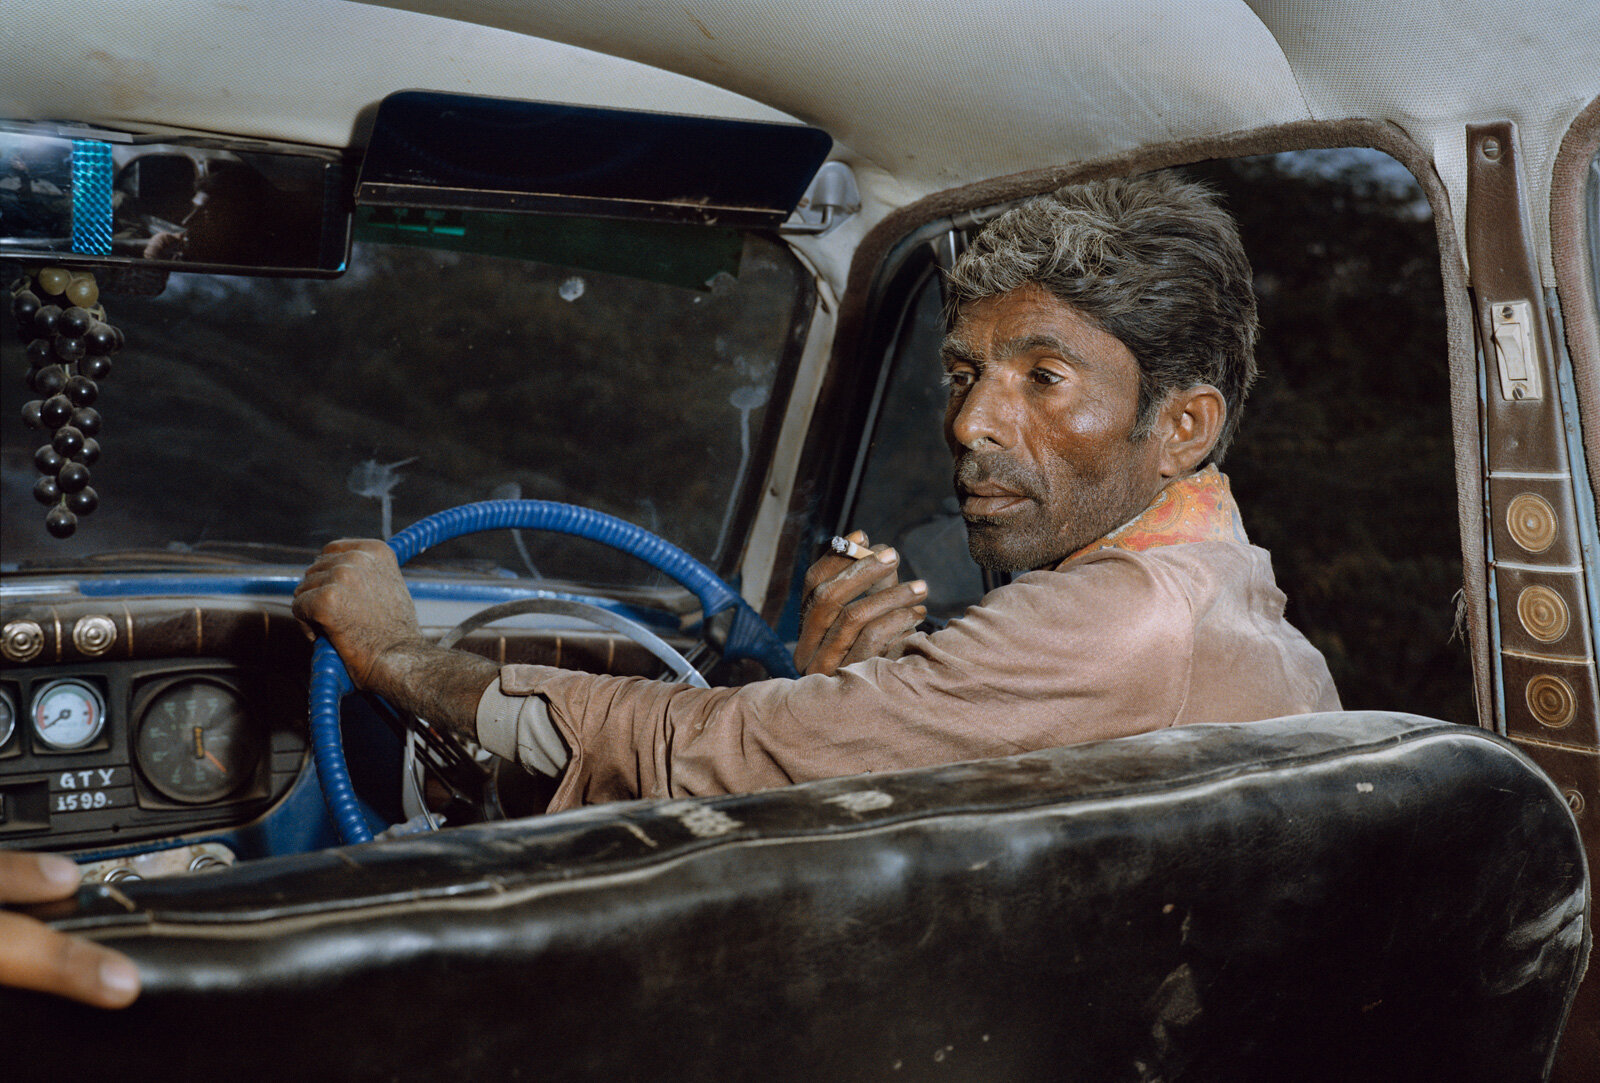  Taxi Driver, Kutch, Gujarat 1984  